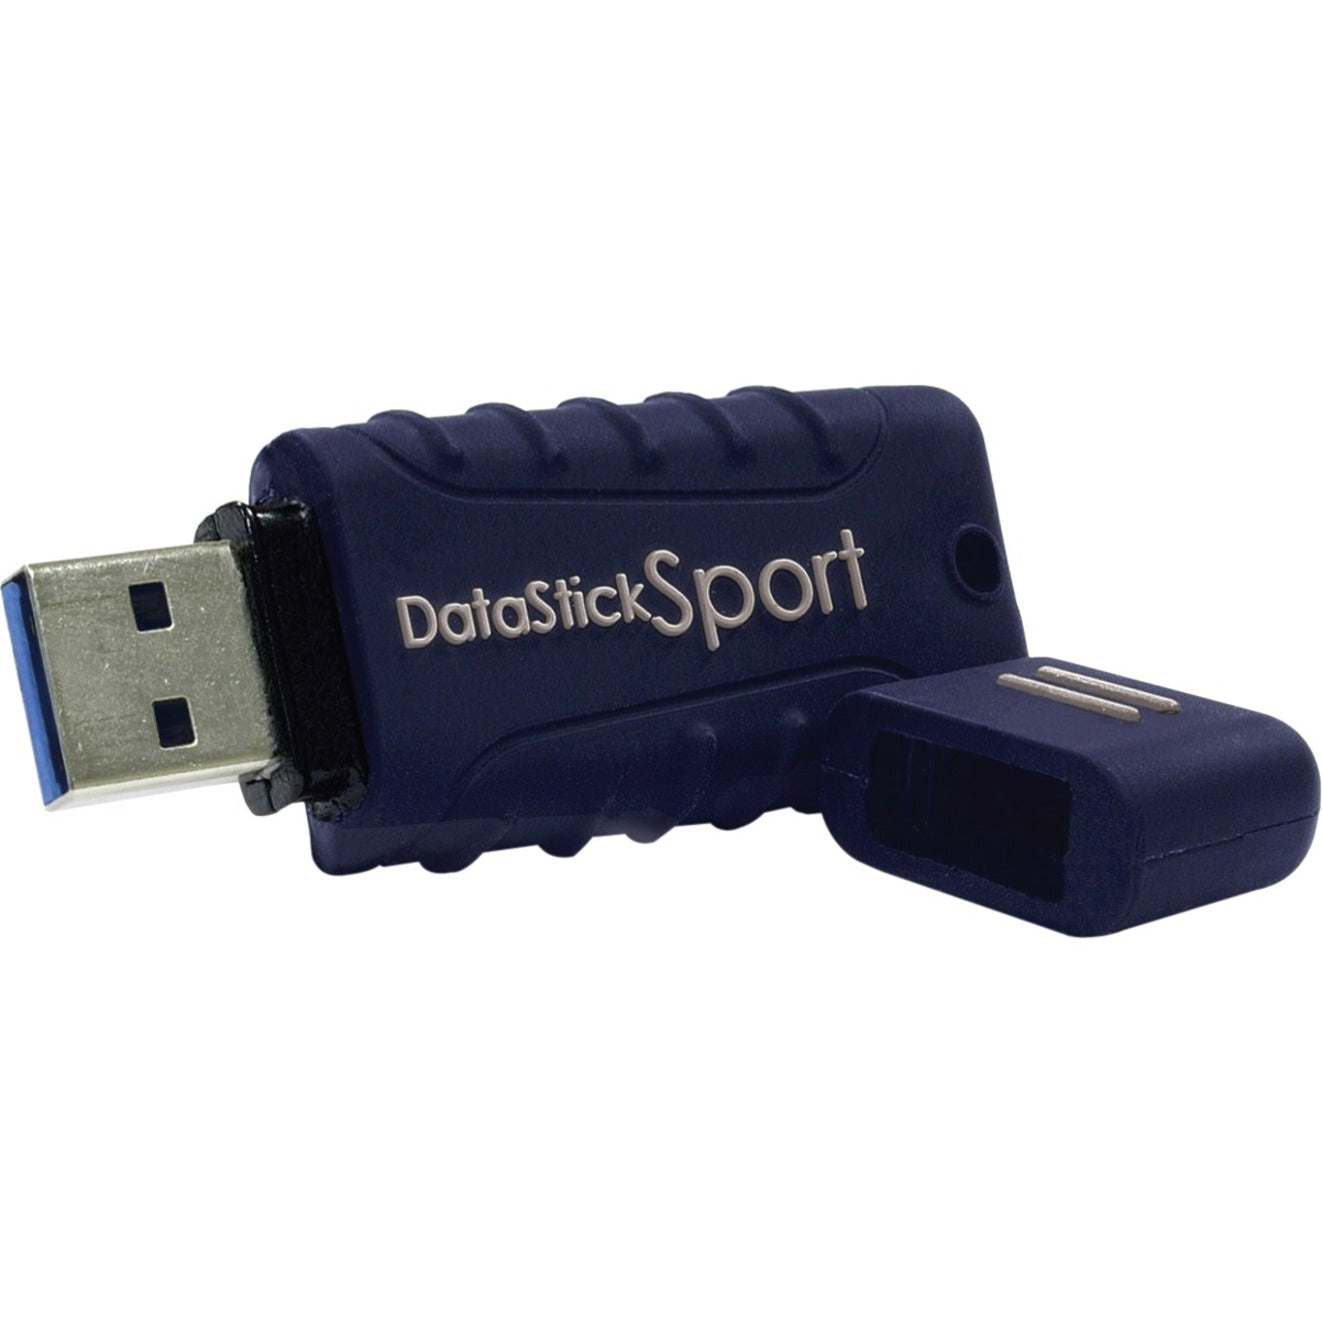 Centon S1-U3W2-64G DataStick Sport Flash Drive, 64GB USB 3.0, Blue